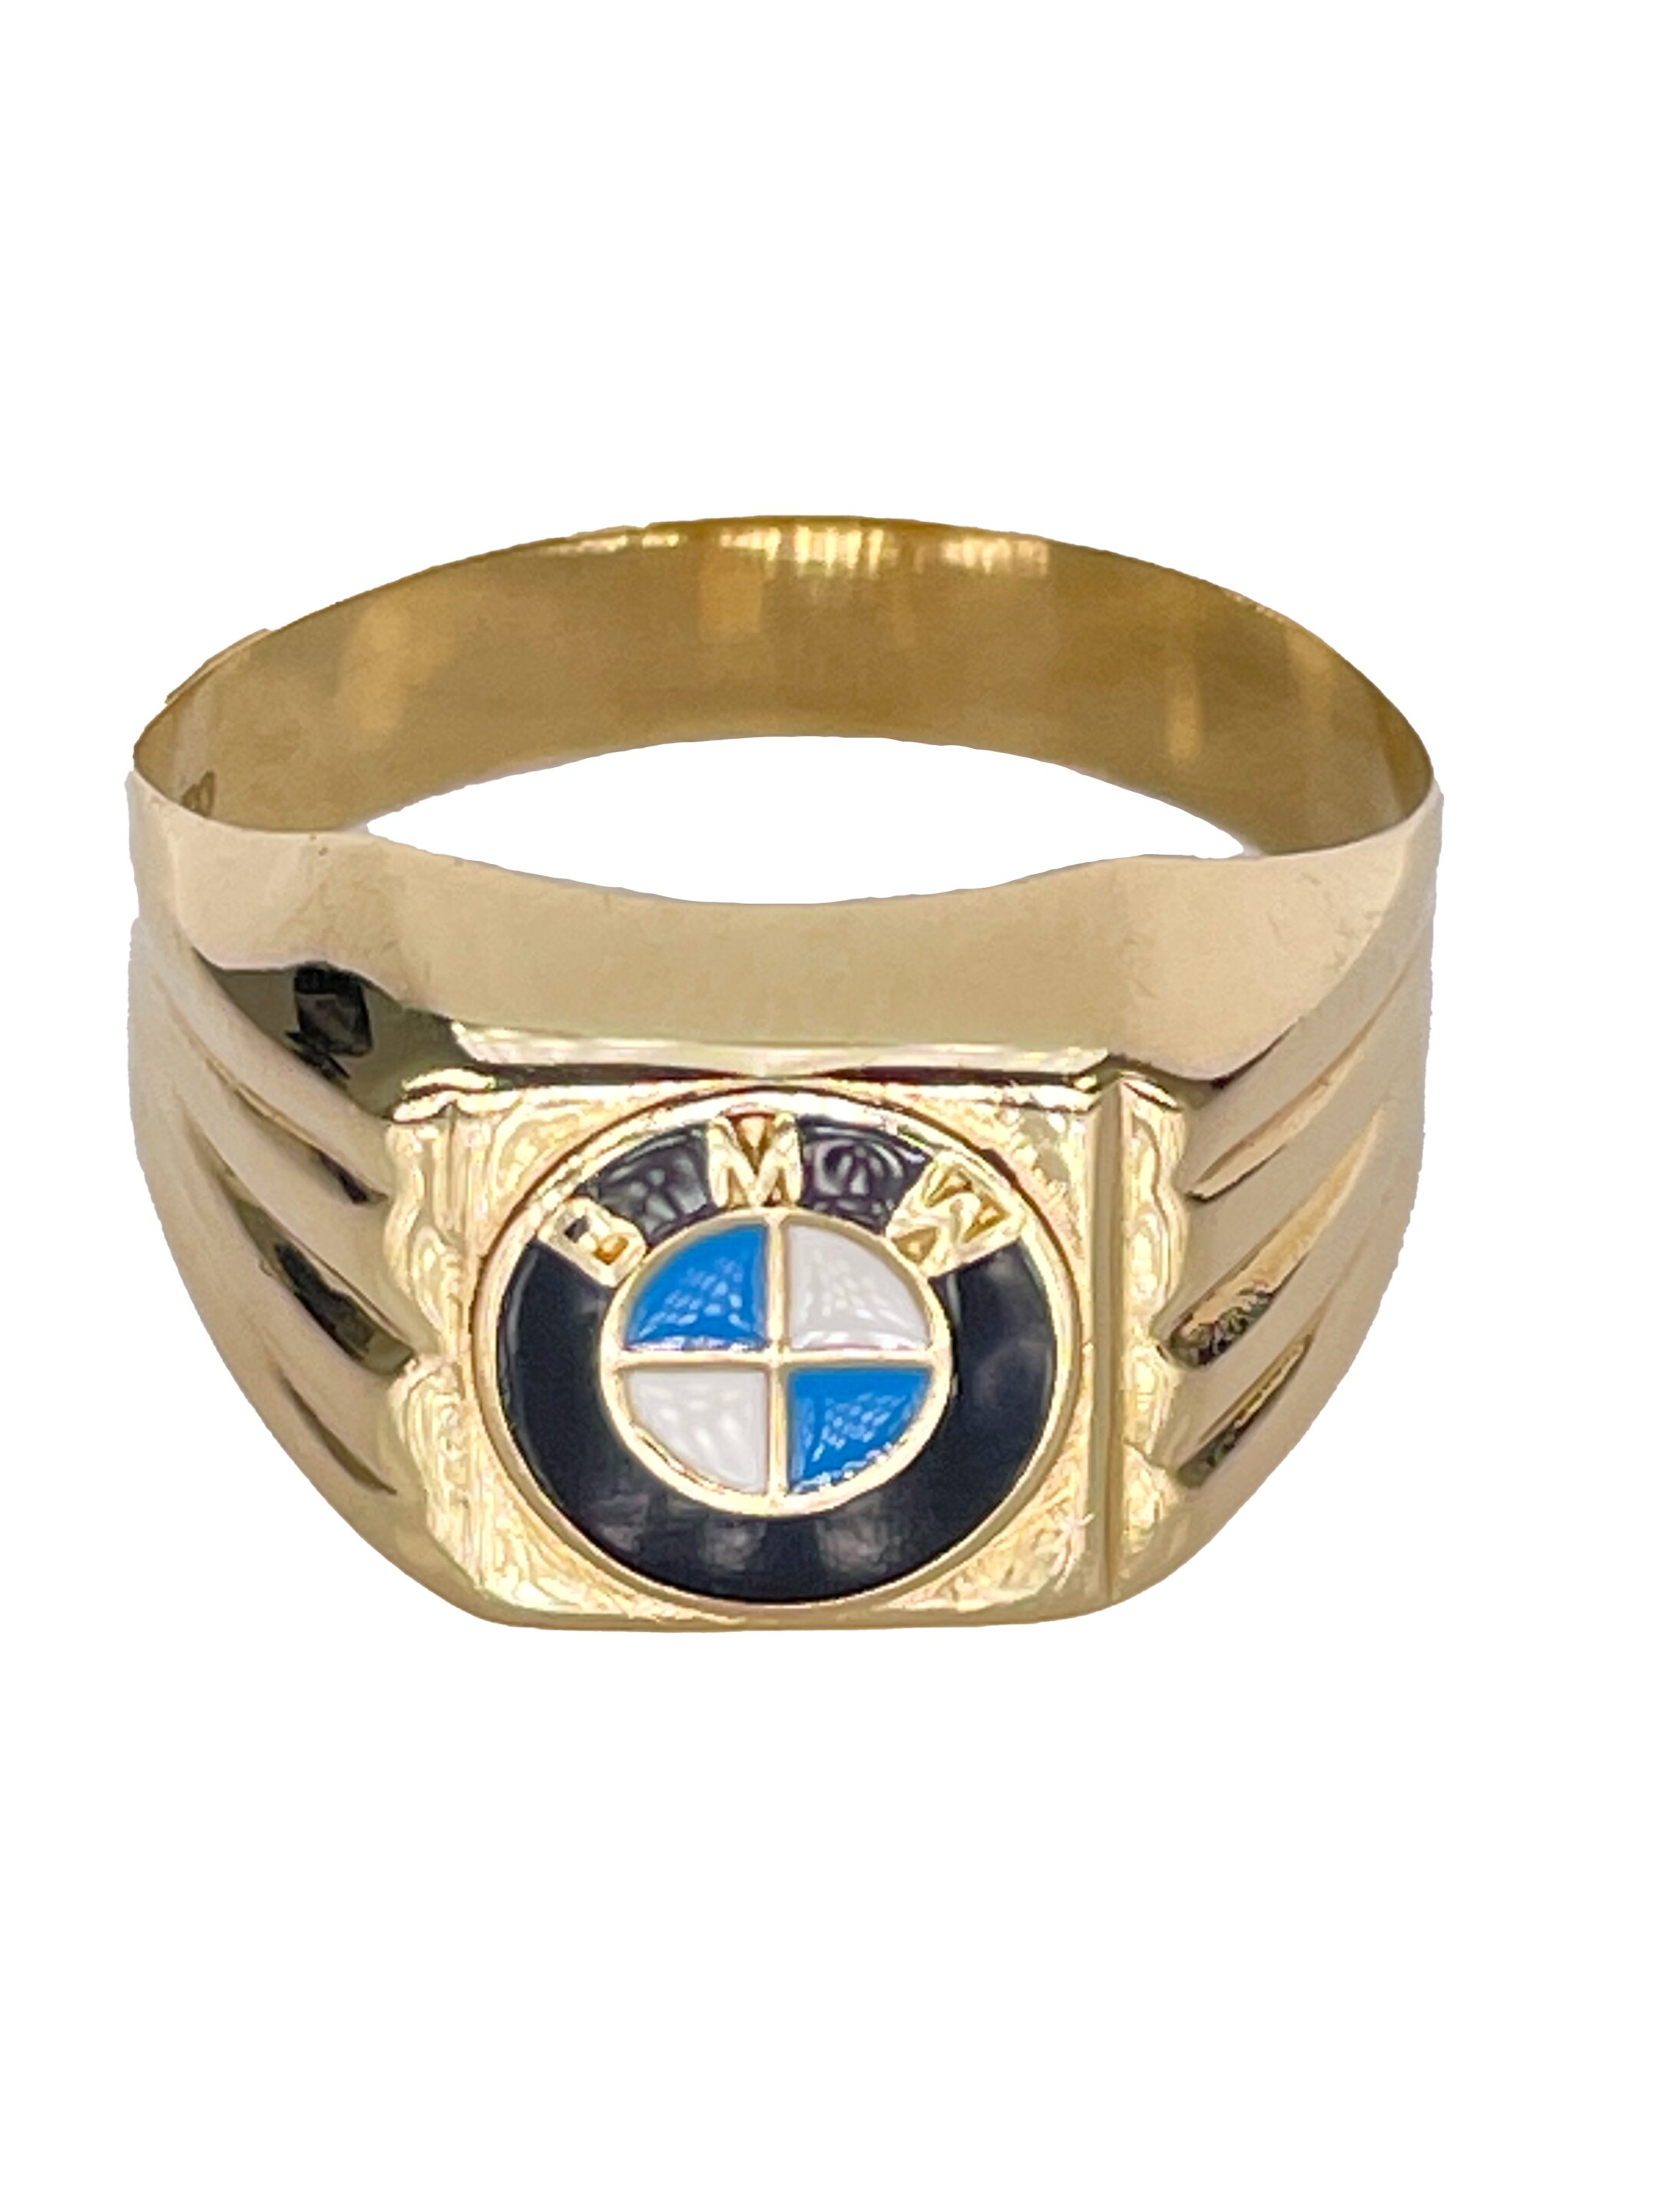 Ανδρικό χρυσό δαχτυλίδι με λογότυπο